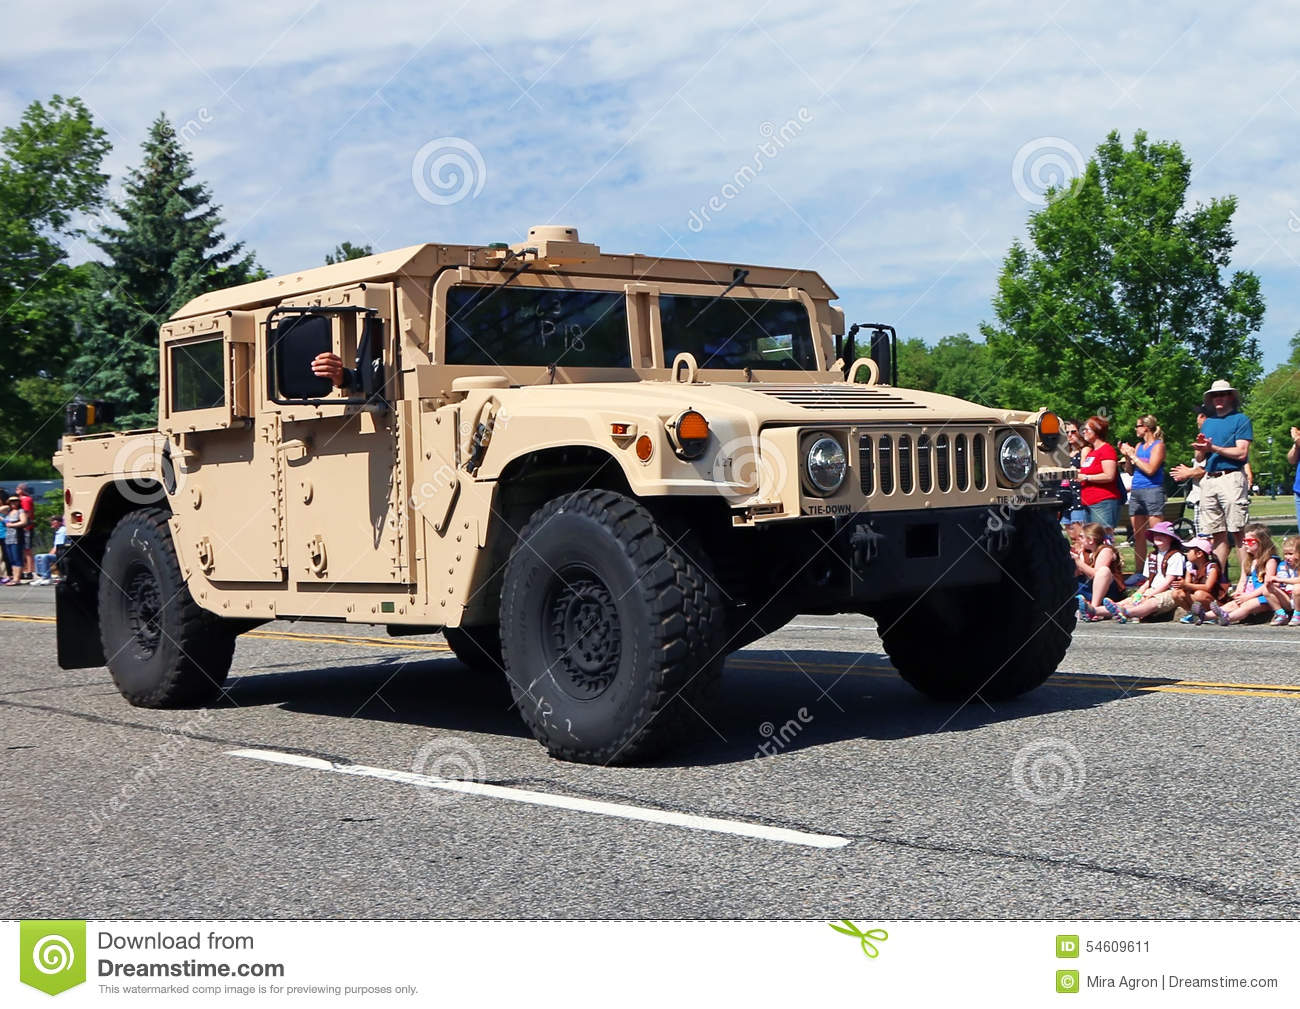 Images of Humvee | 1300x1009